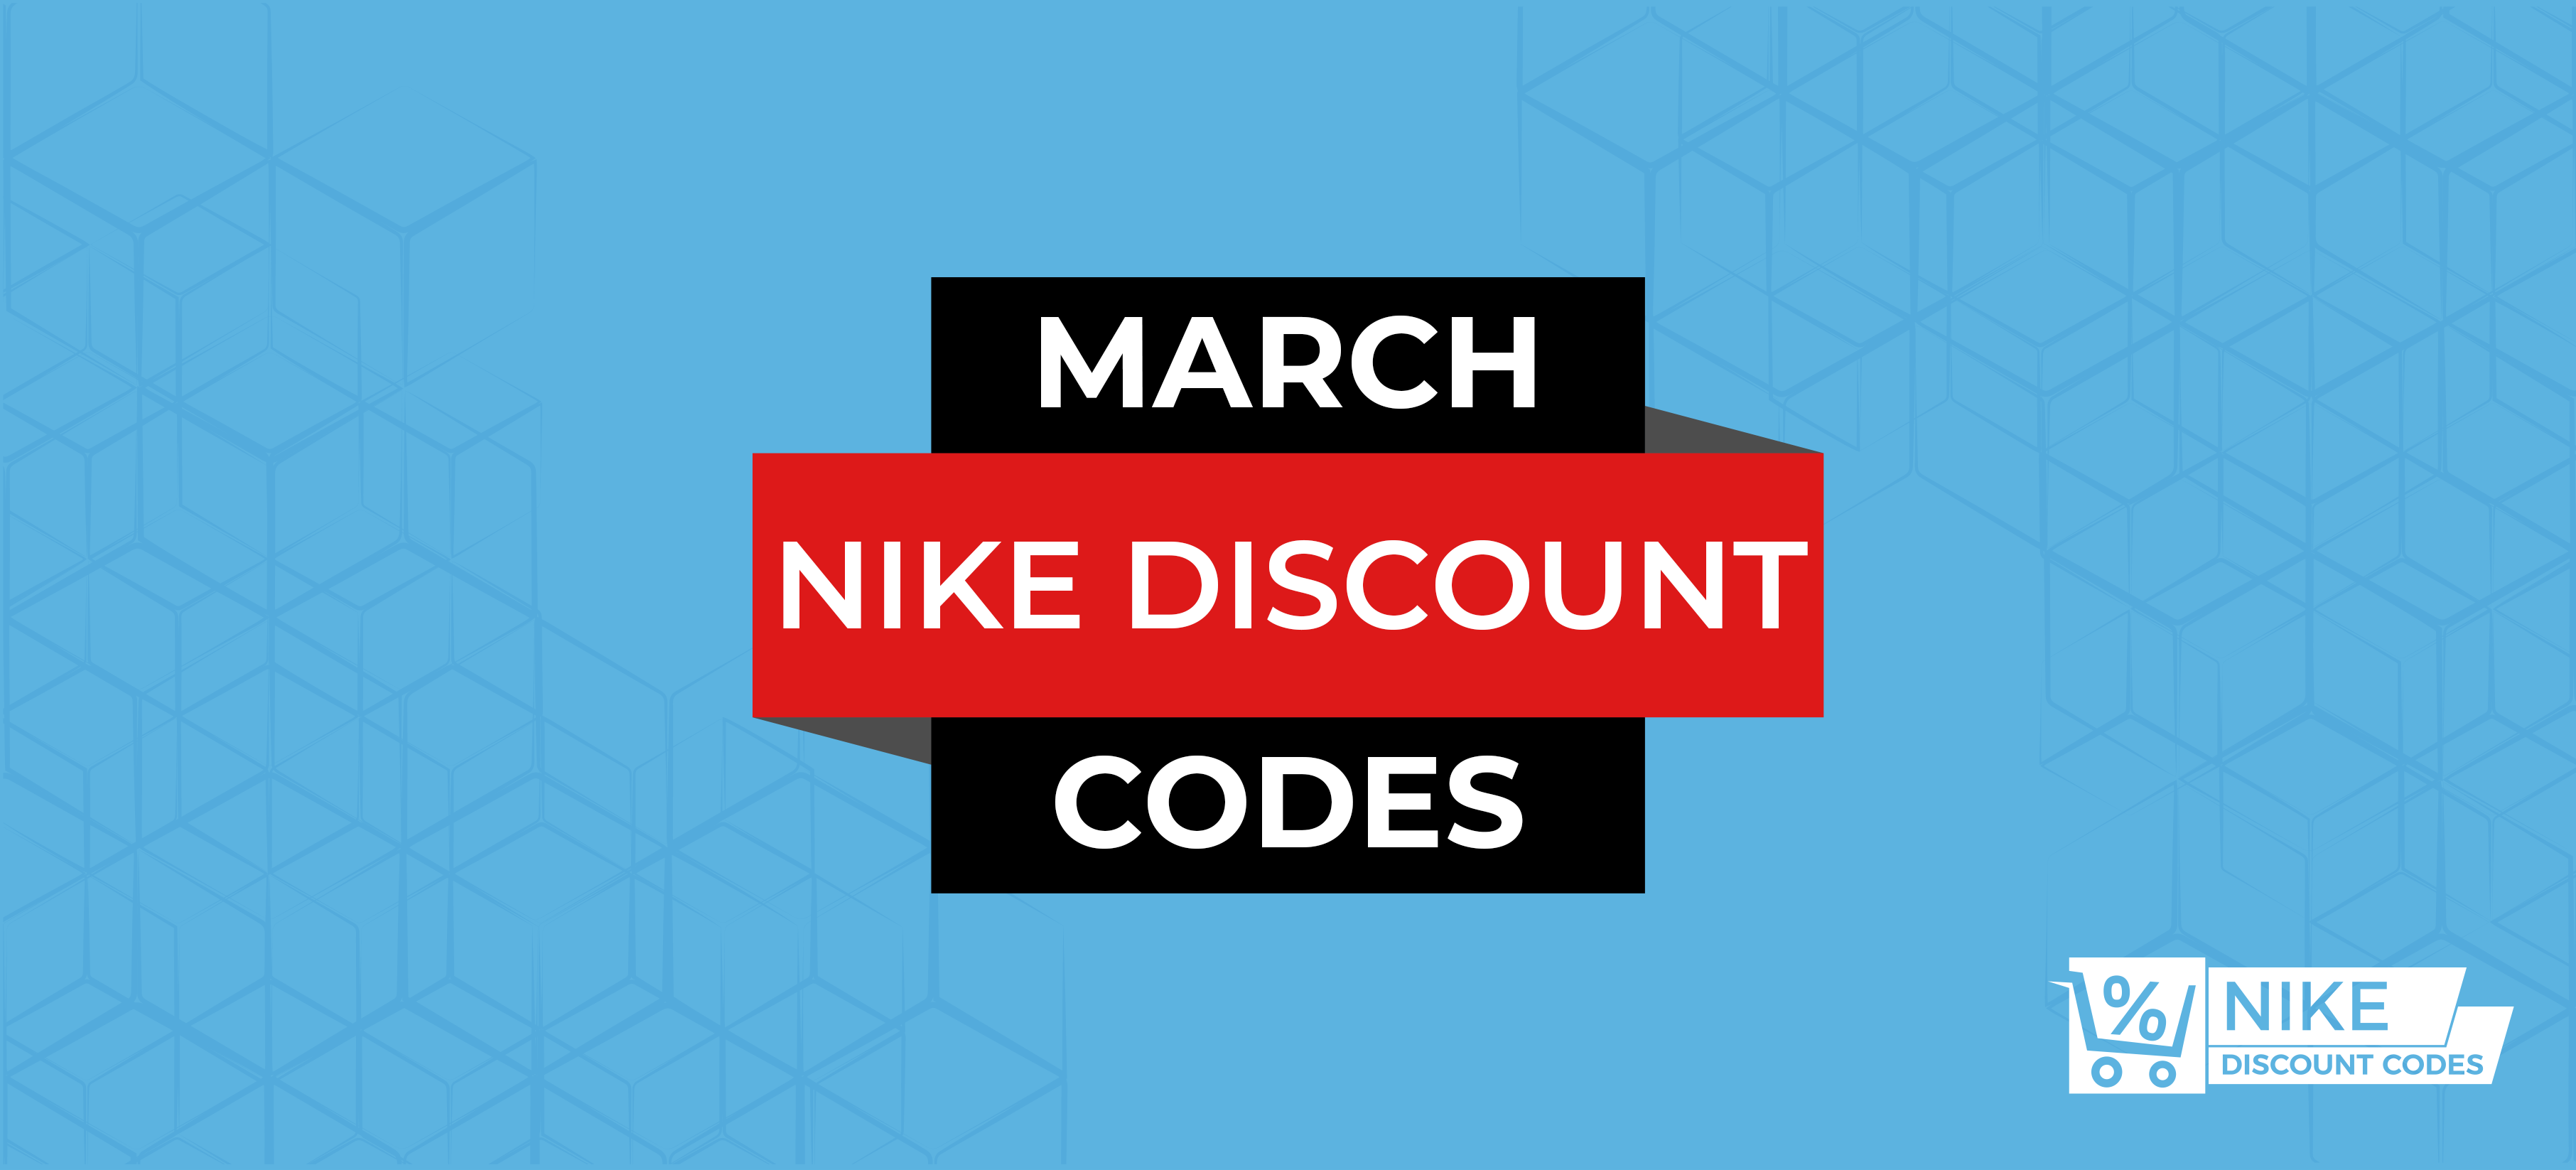 nike uk discount code april 2020